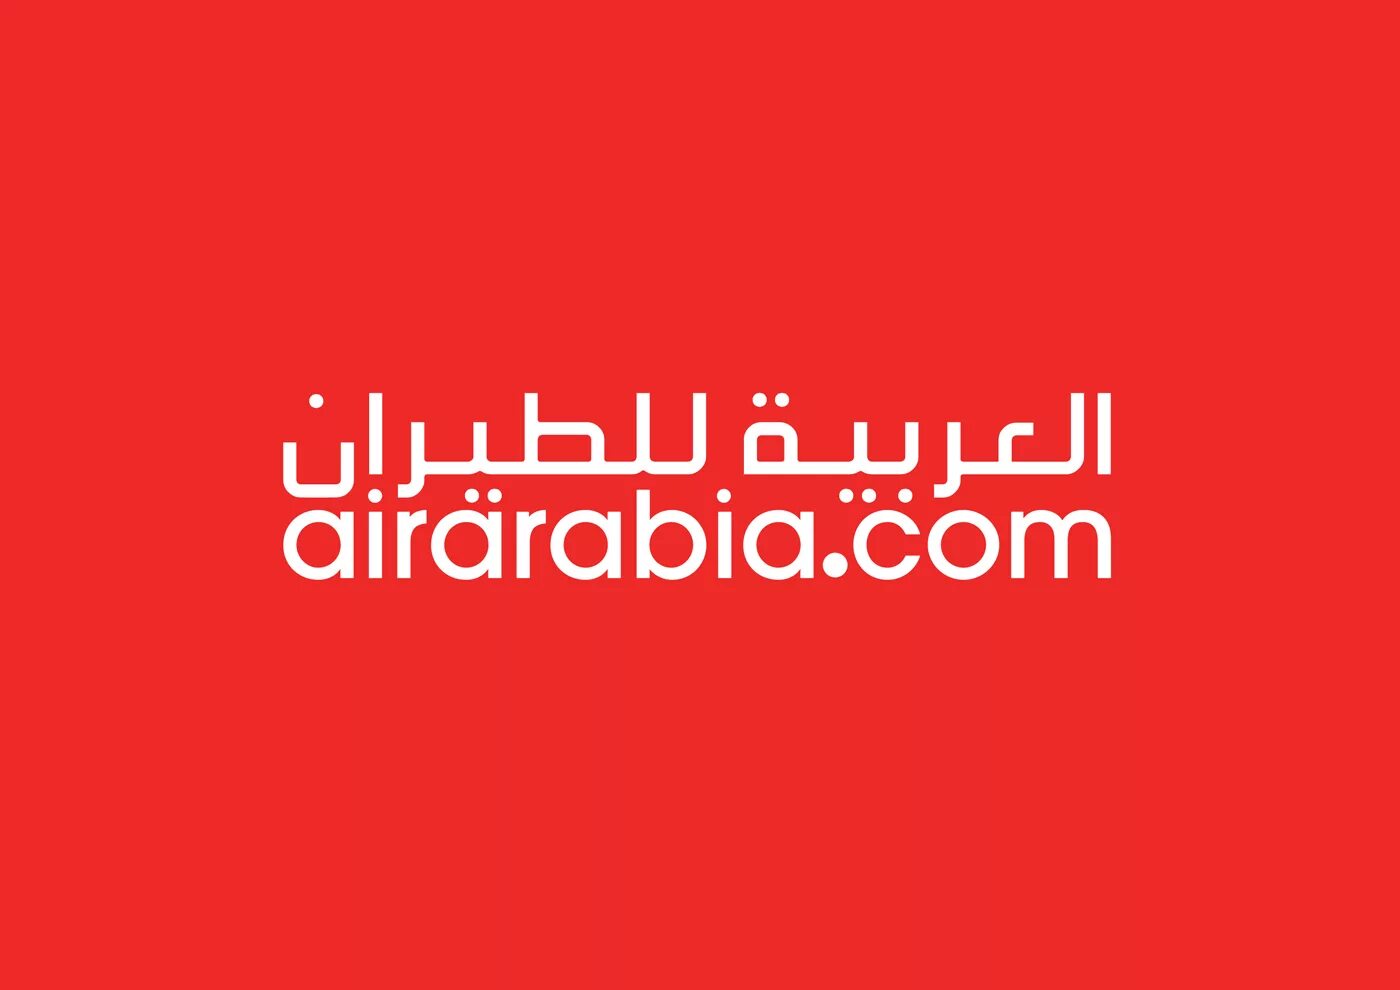 Air Arabia лого. Air Arabia Airways logo. AIRARABIA.com logo. Air Arabia logo New.